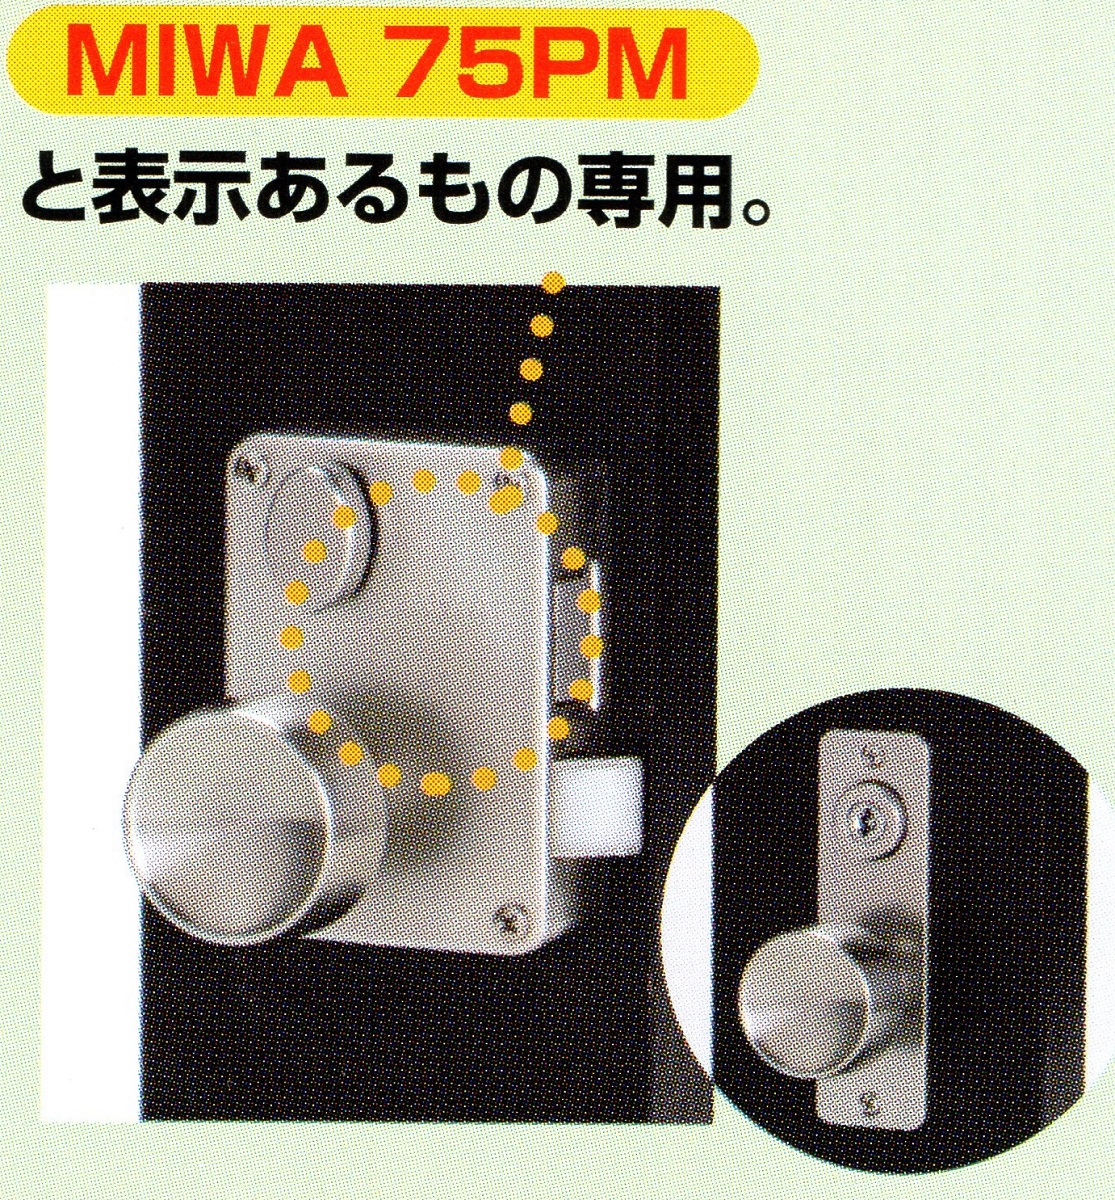 楽天市場】GOAL V-GMPMK MIWA PMK(75PM) 取替用シリンダー ディンプル 